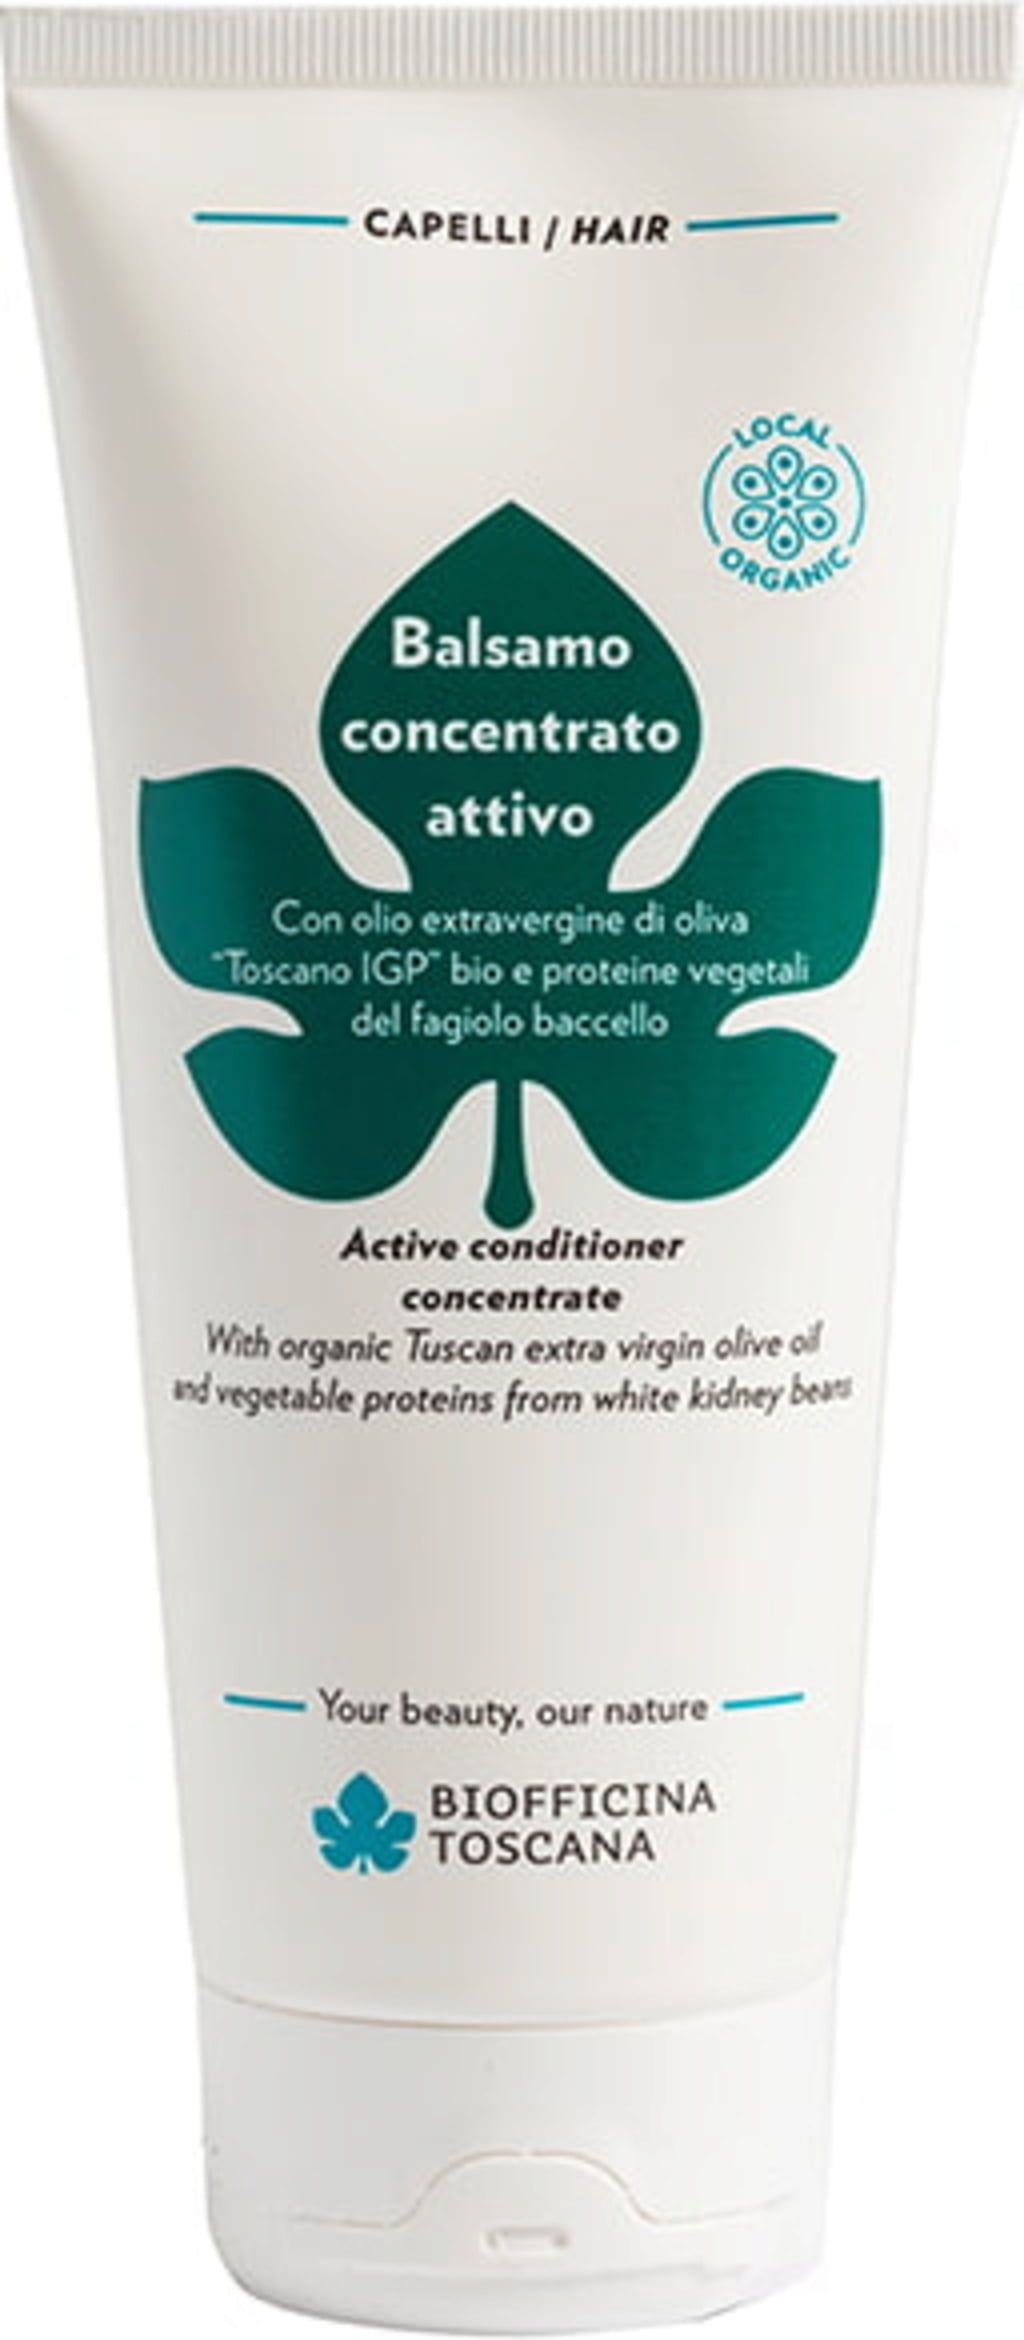 Biofficina Toscana Koncentriran aktivni balzam za lase - 200 ml